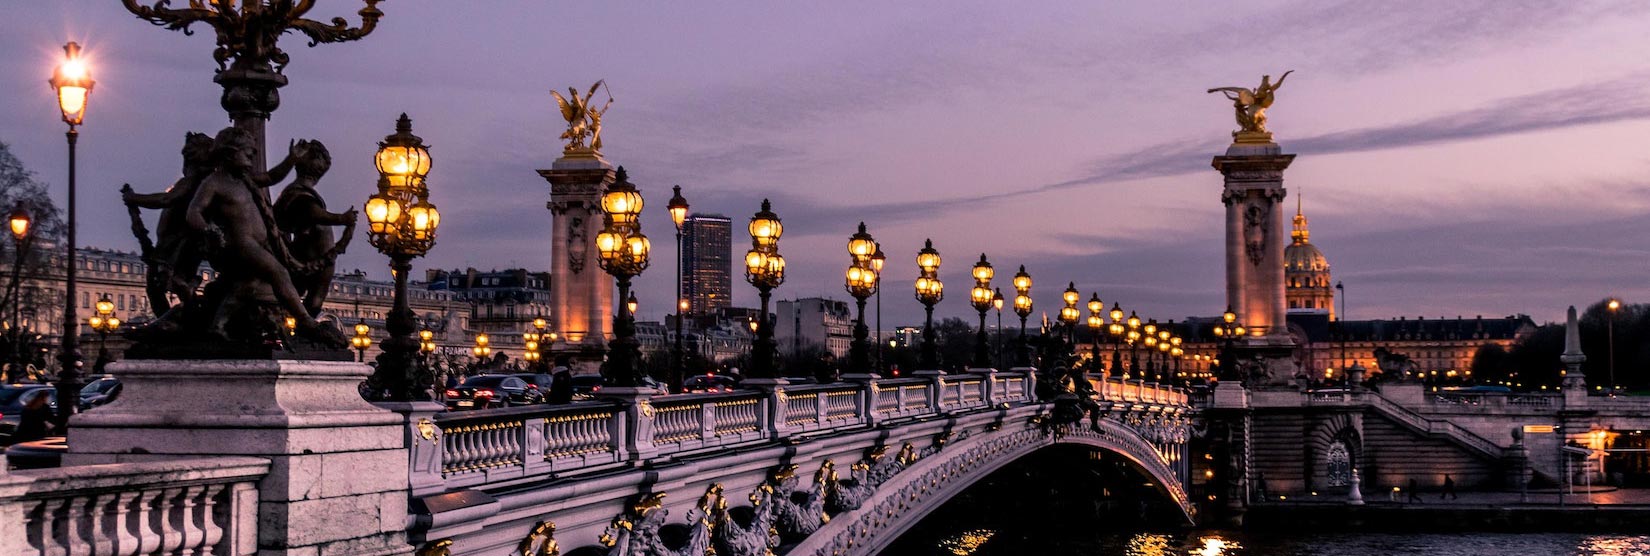 גשר פונט אלכסנדר השלישי פריז, צרפת